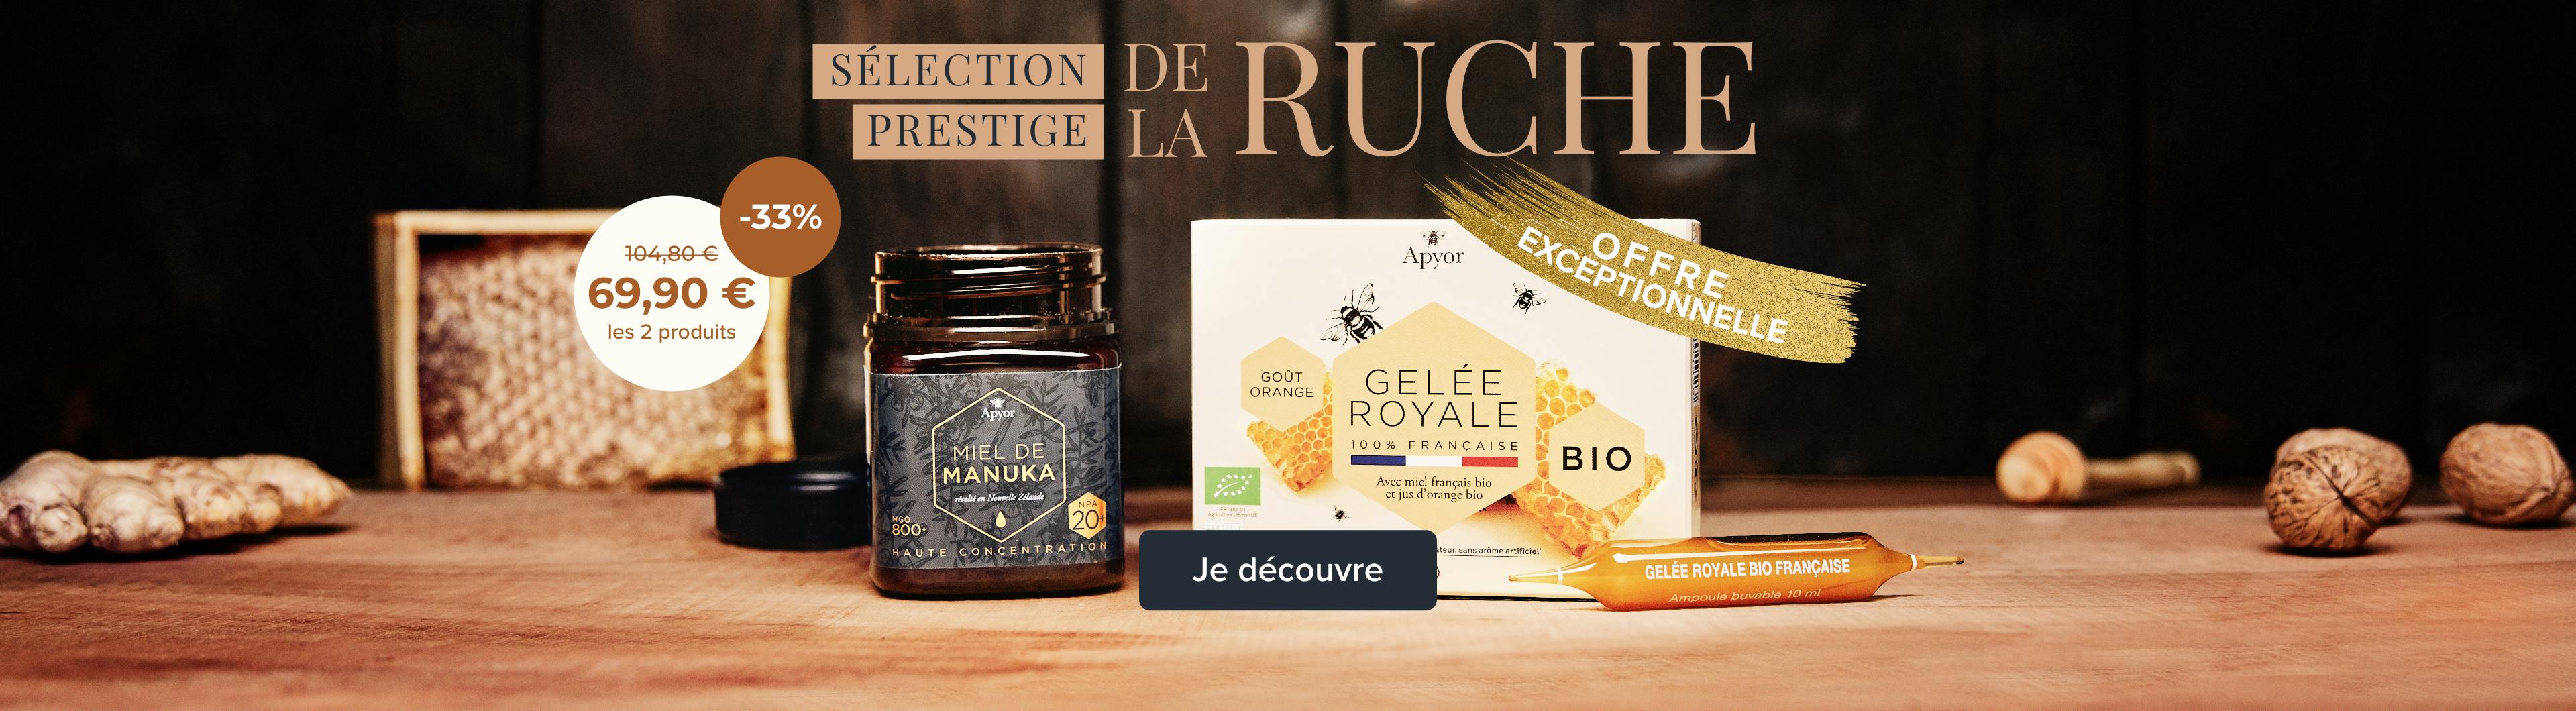 Prestige de la ruche : miel de Manuka et gelée royale française